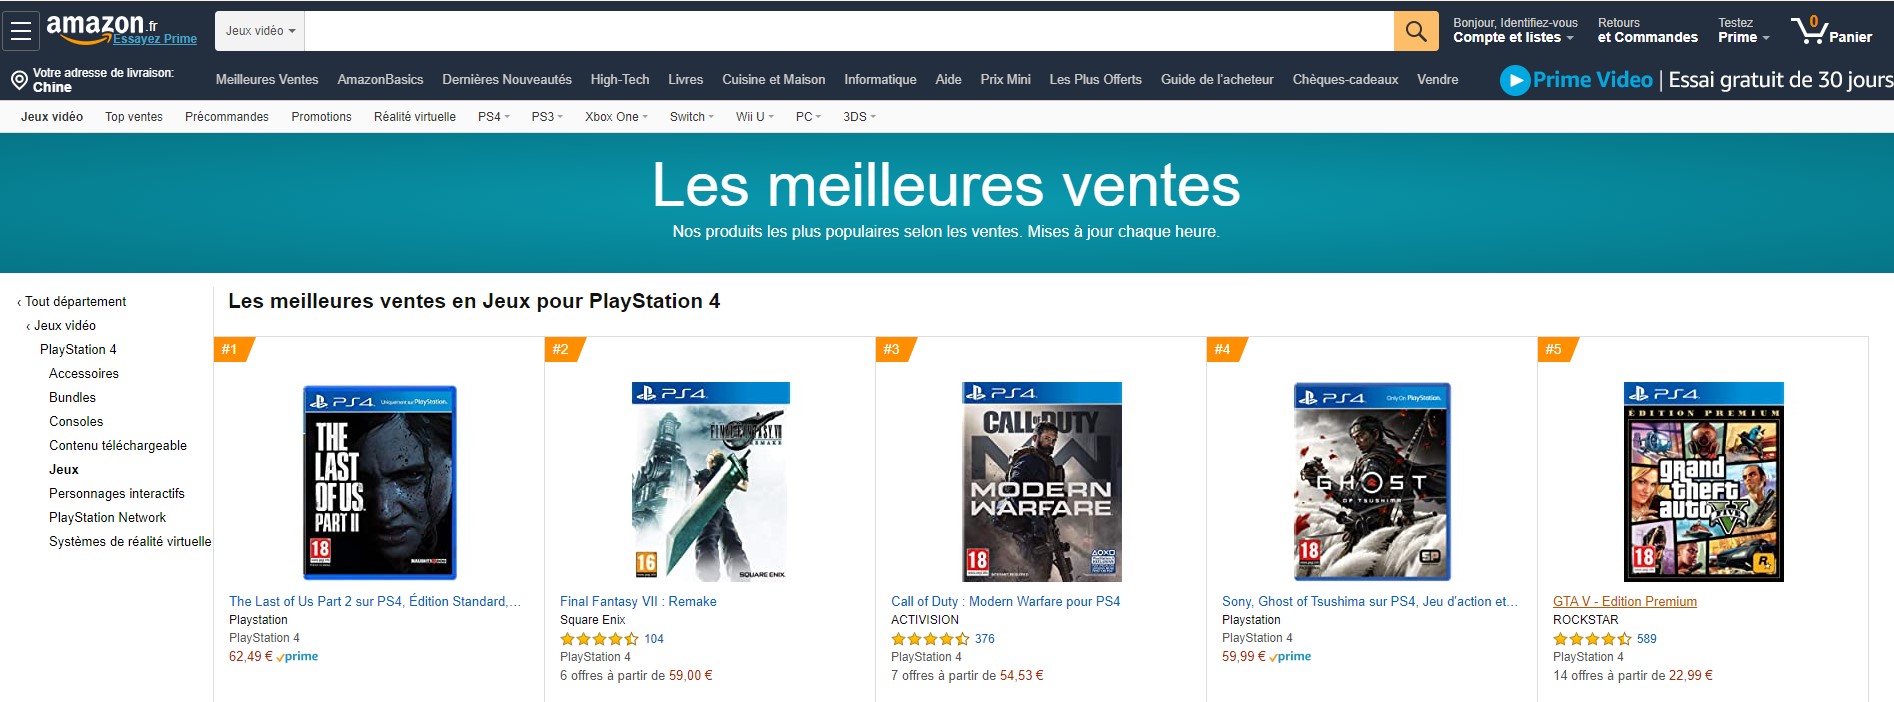 《最後的生還者2》英國法國亞馬遜銷量位列第一